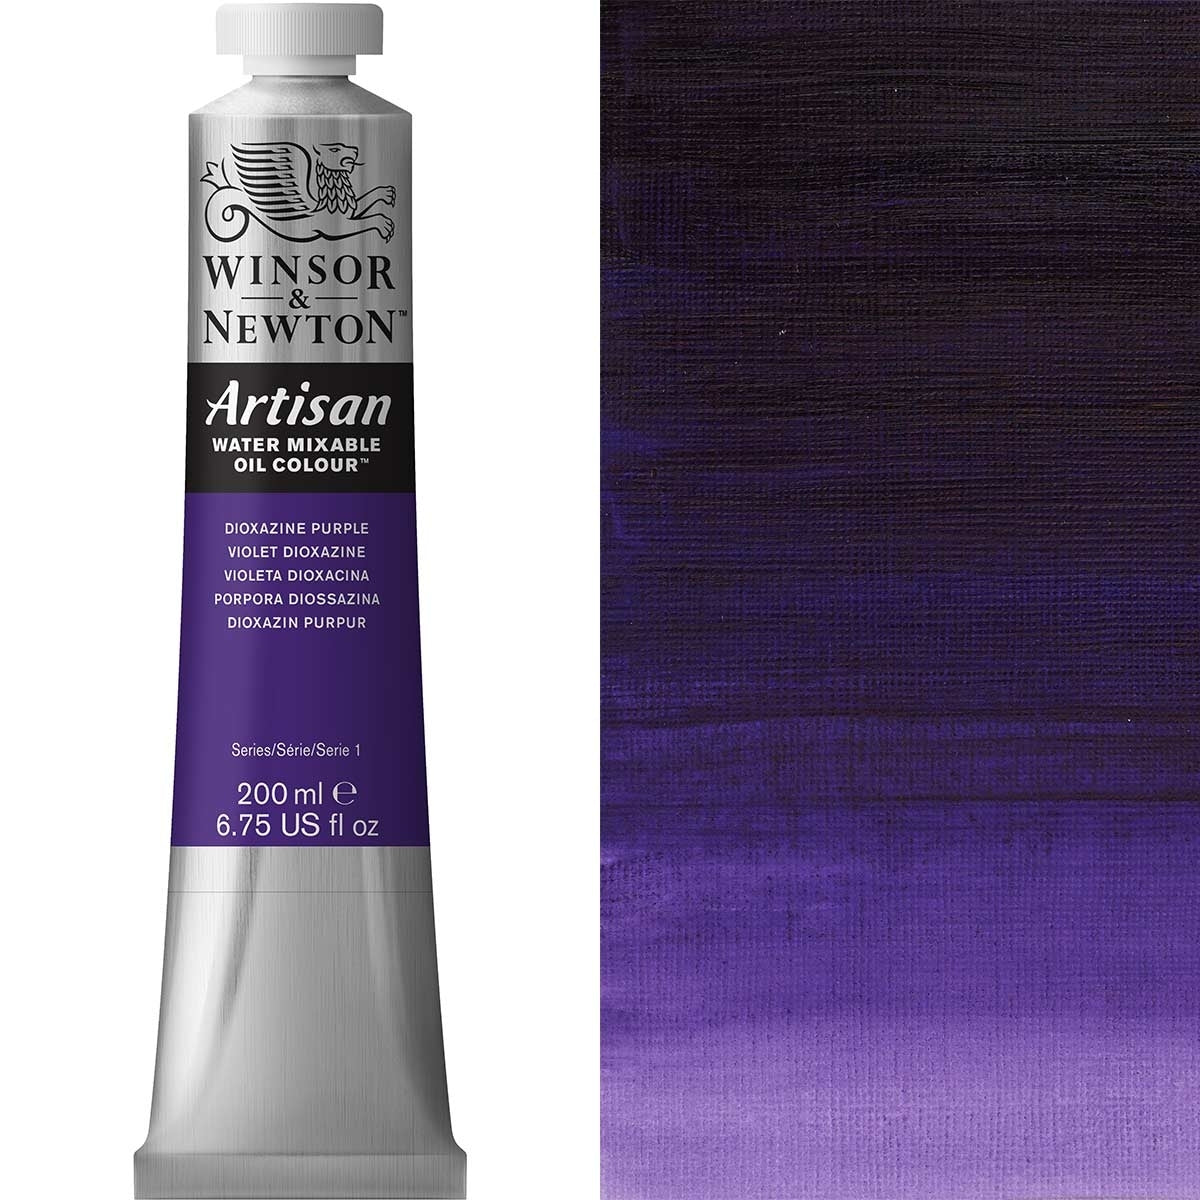 Winsor e Newton - Watermixable di colore olio artigianale - 200 ml - viola dixazina